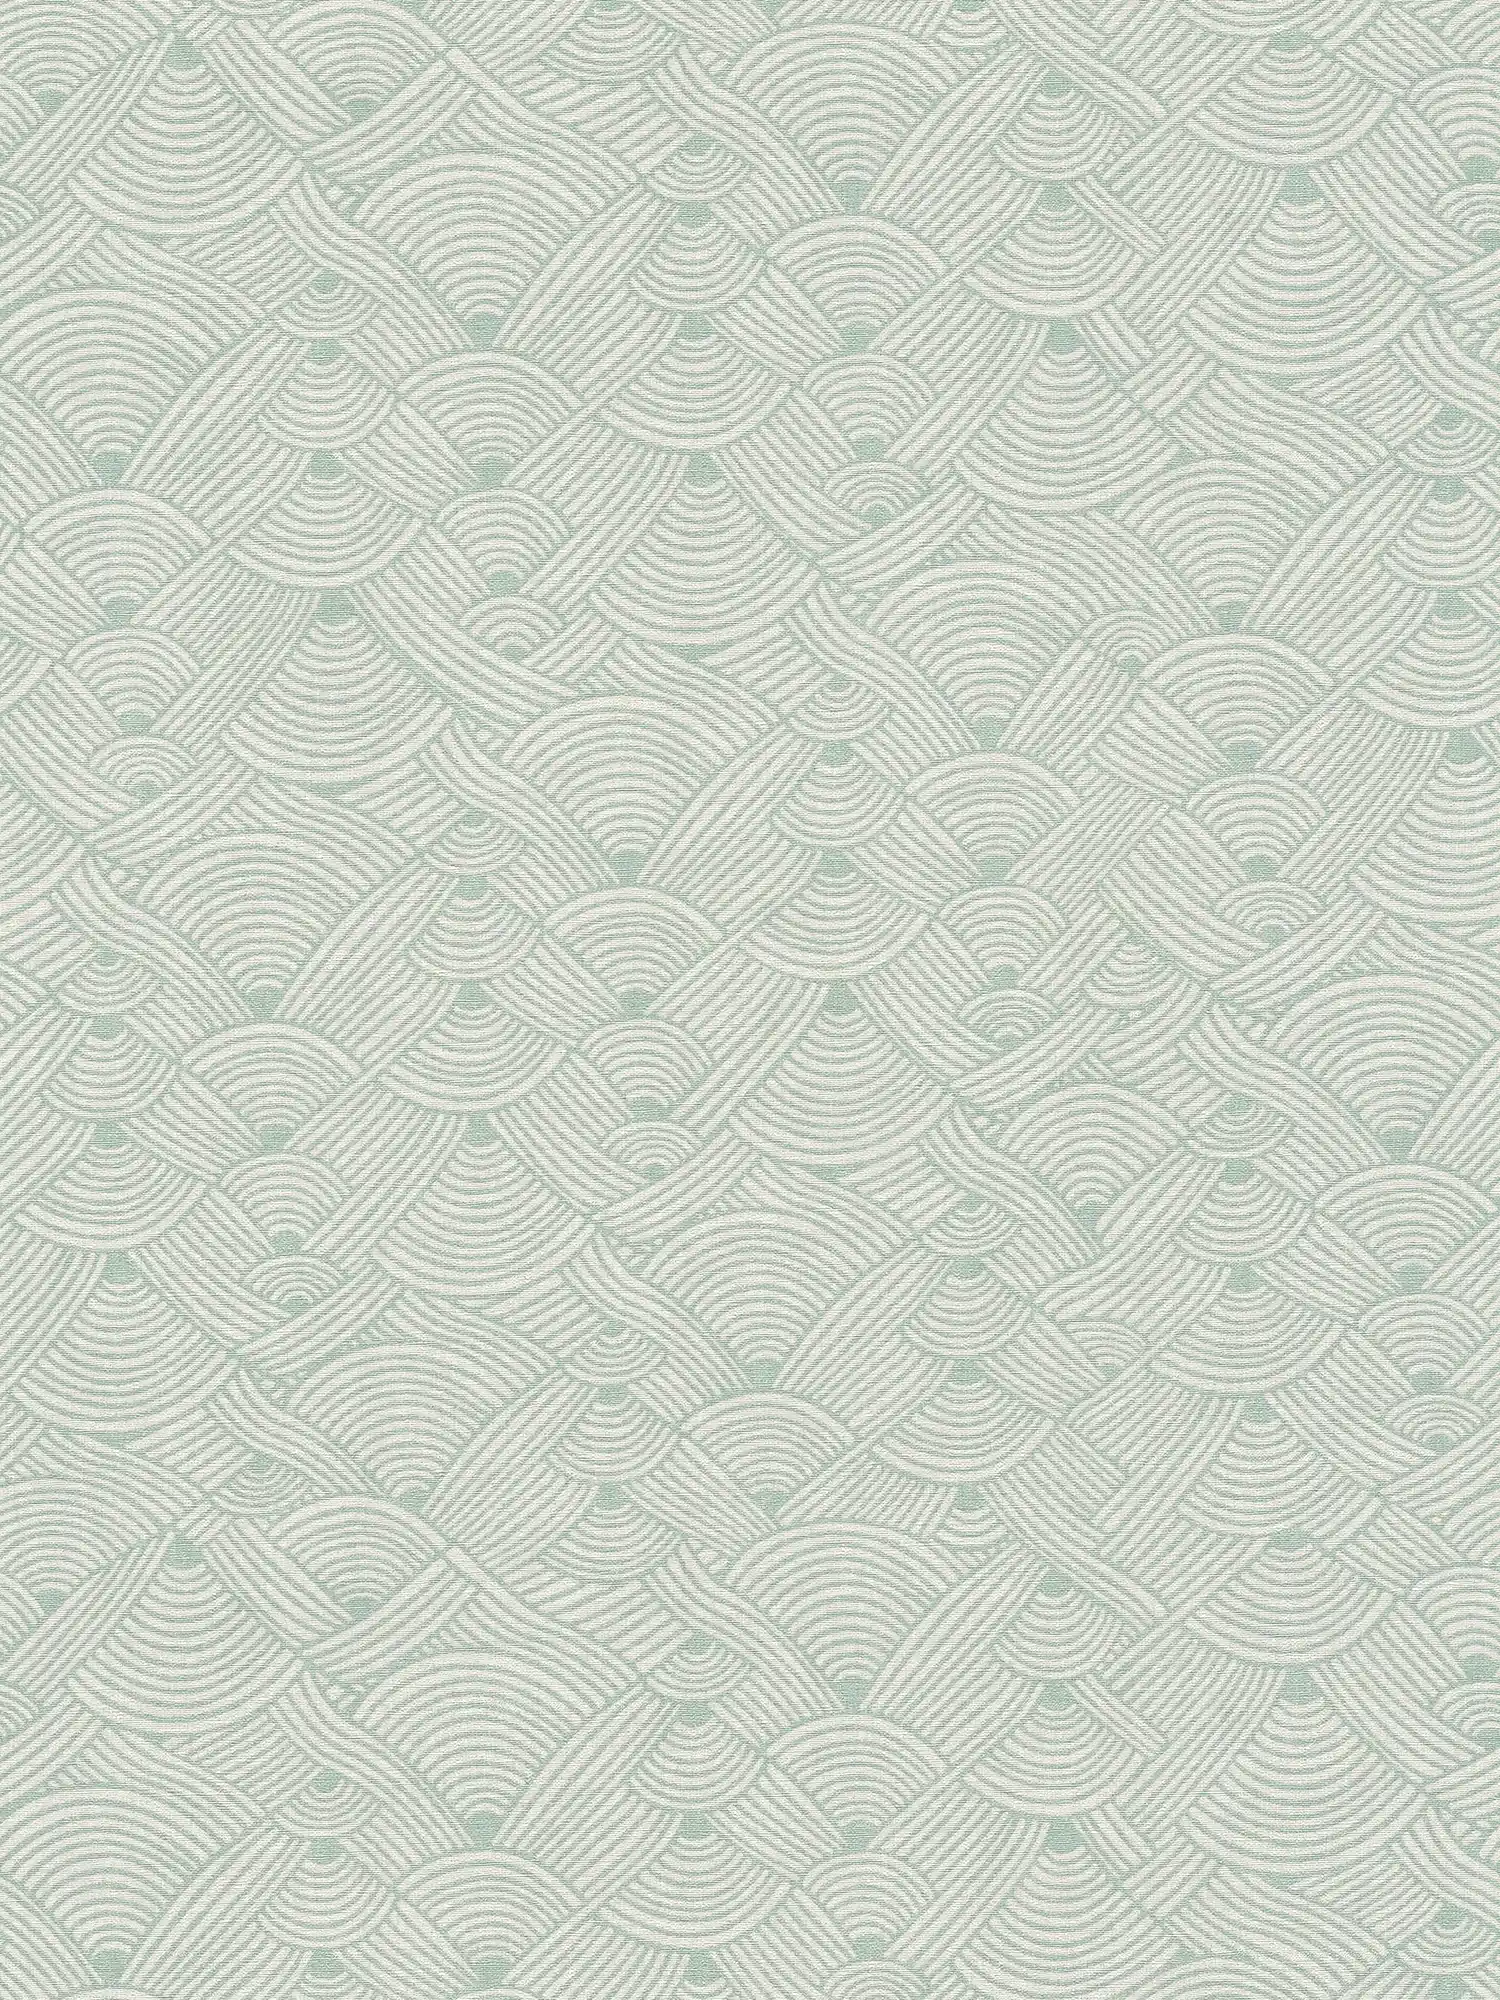 Papel pintado gráfico de ondas en colores tierra - verde, blanco, azul
